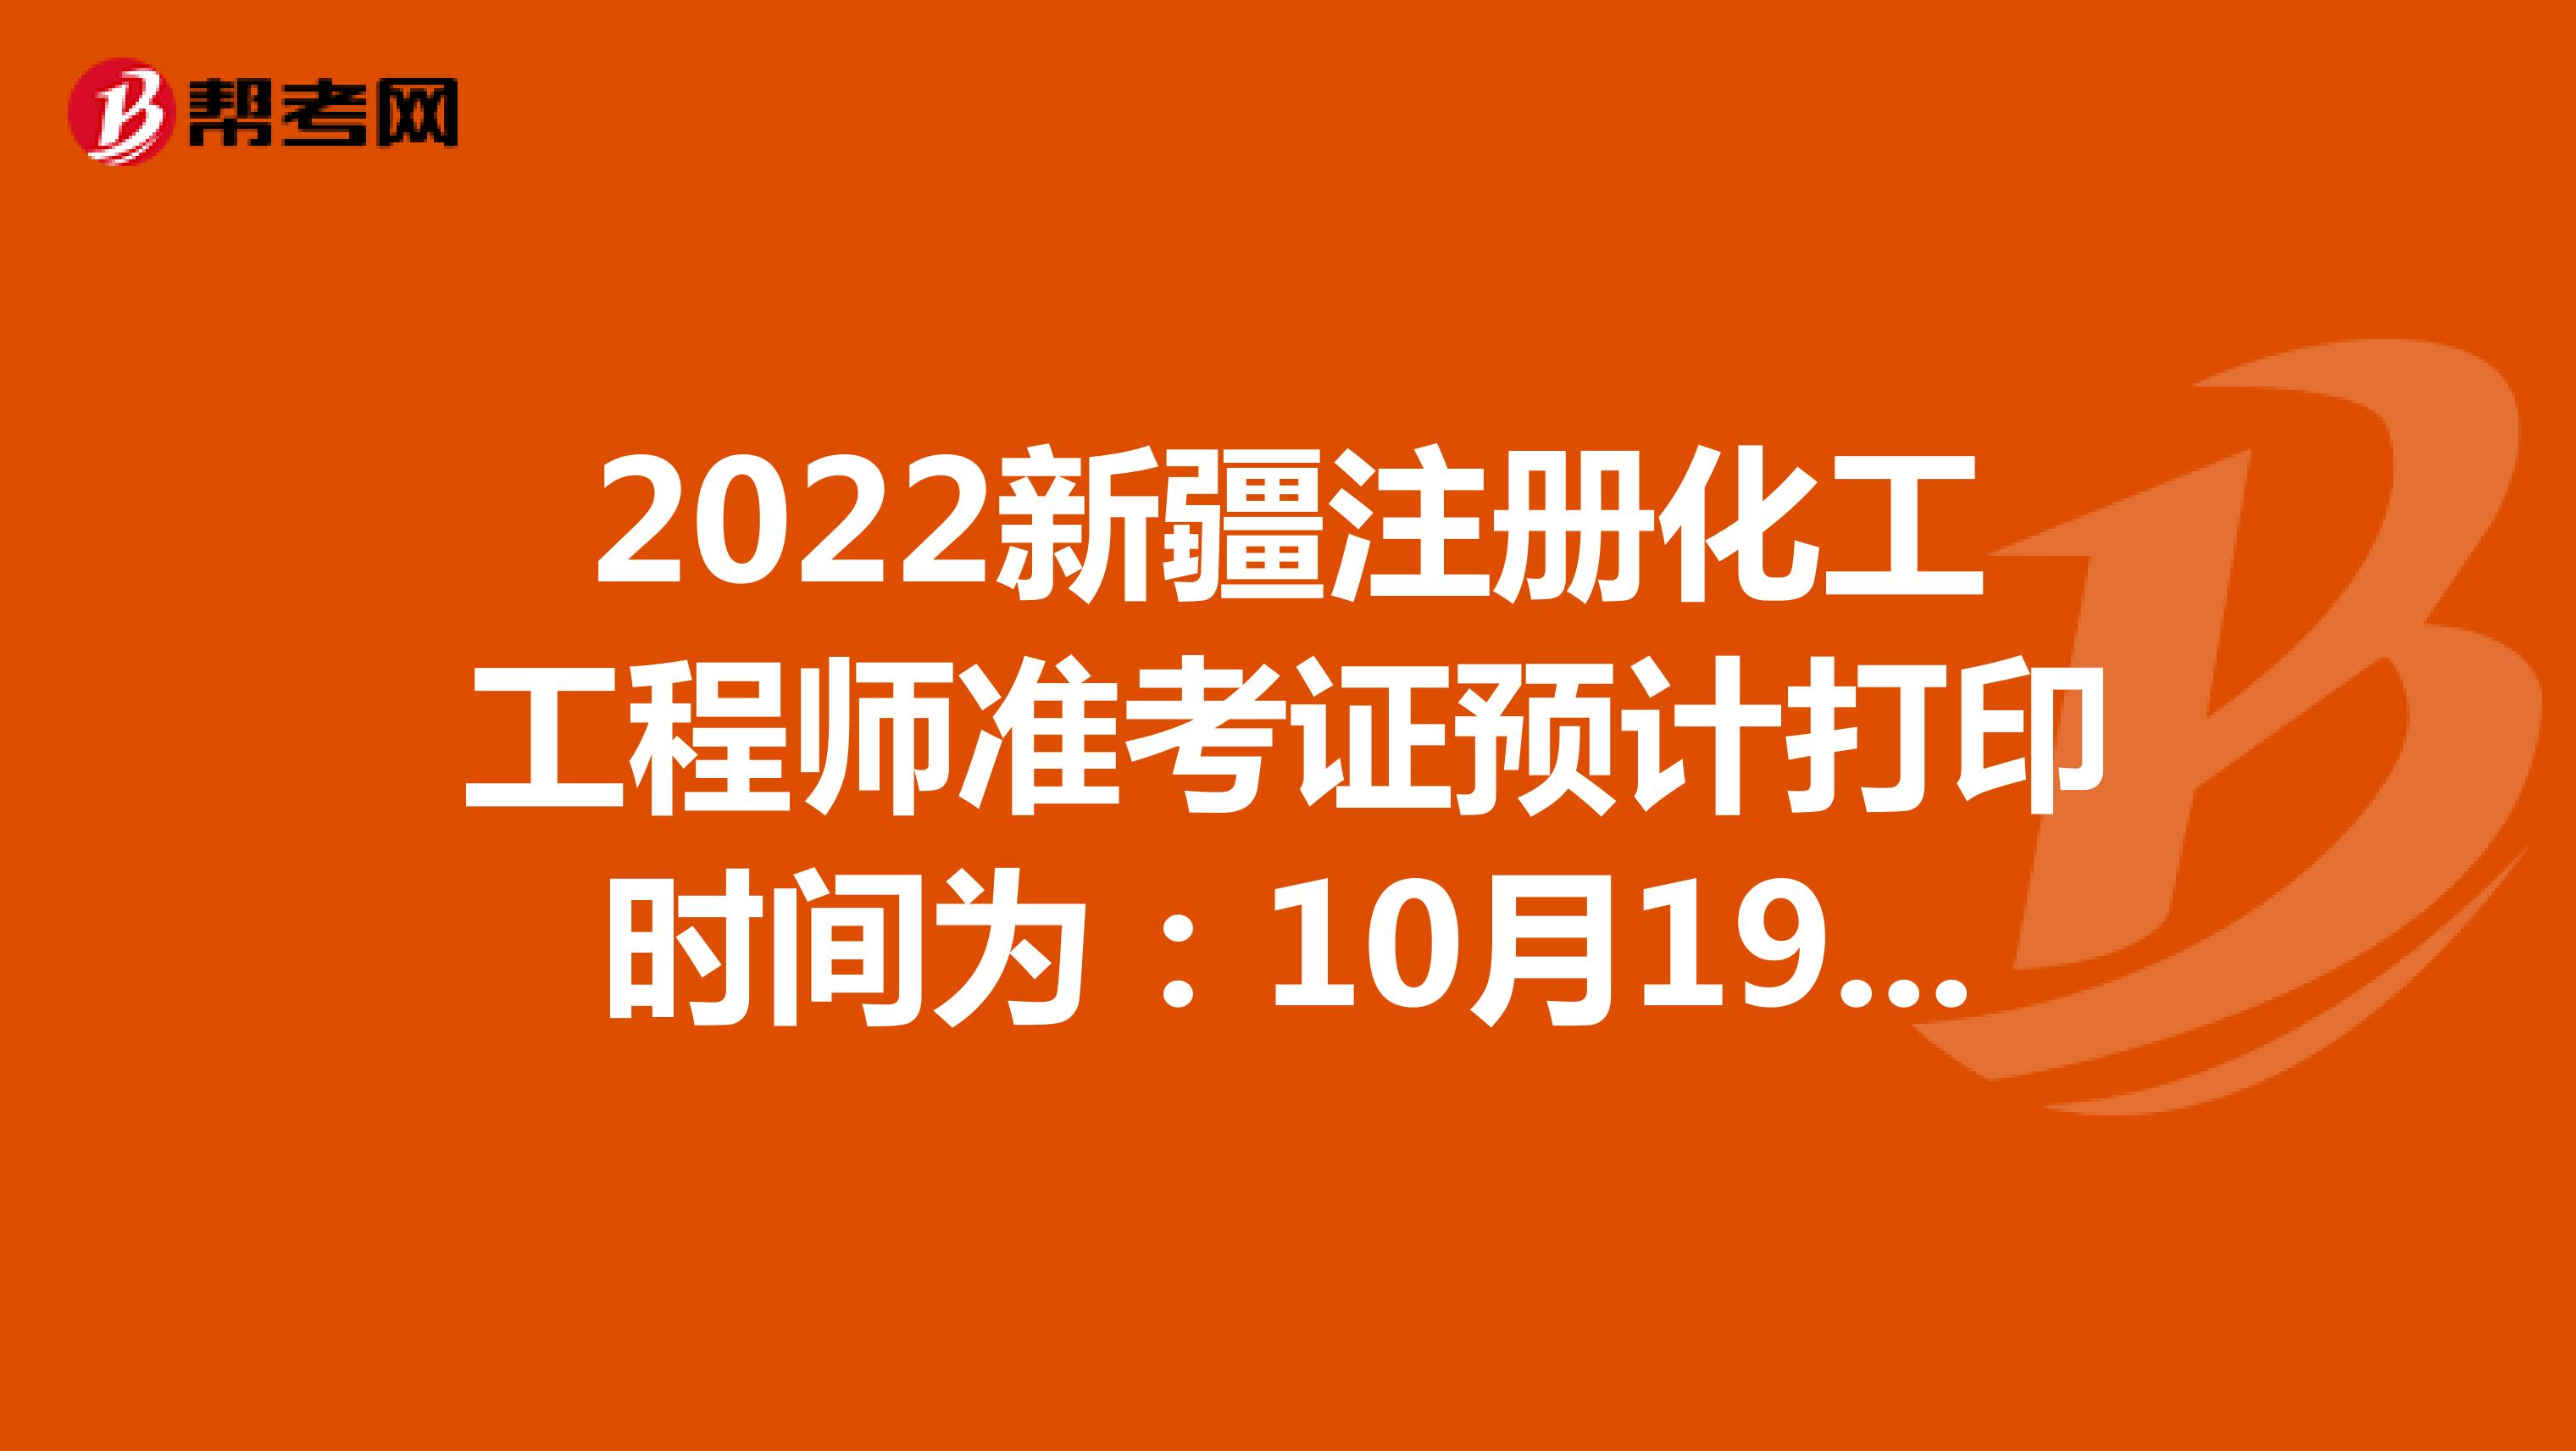 2022新疆注册化工工程师准考证预计打印时间为：10月19日-22日